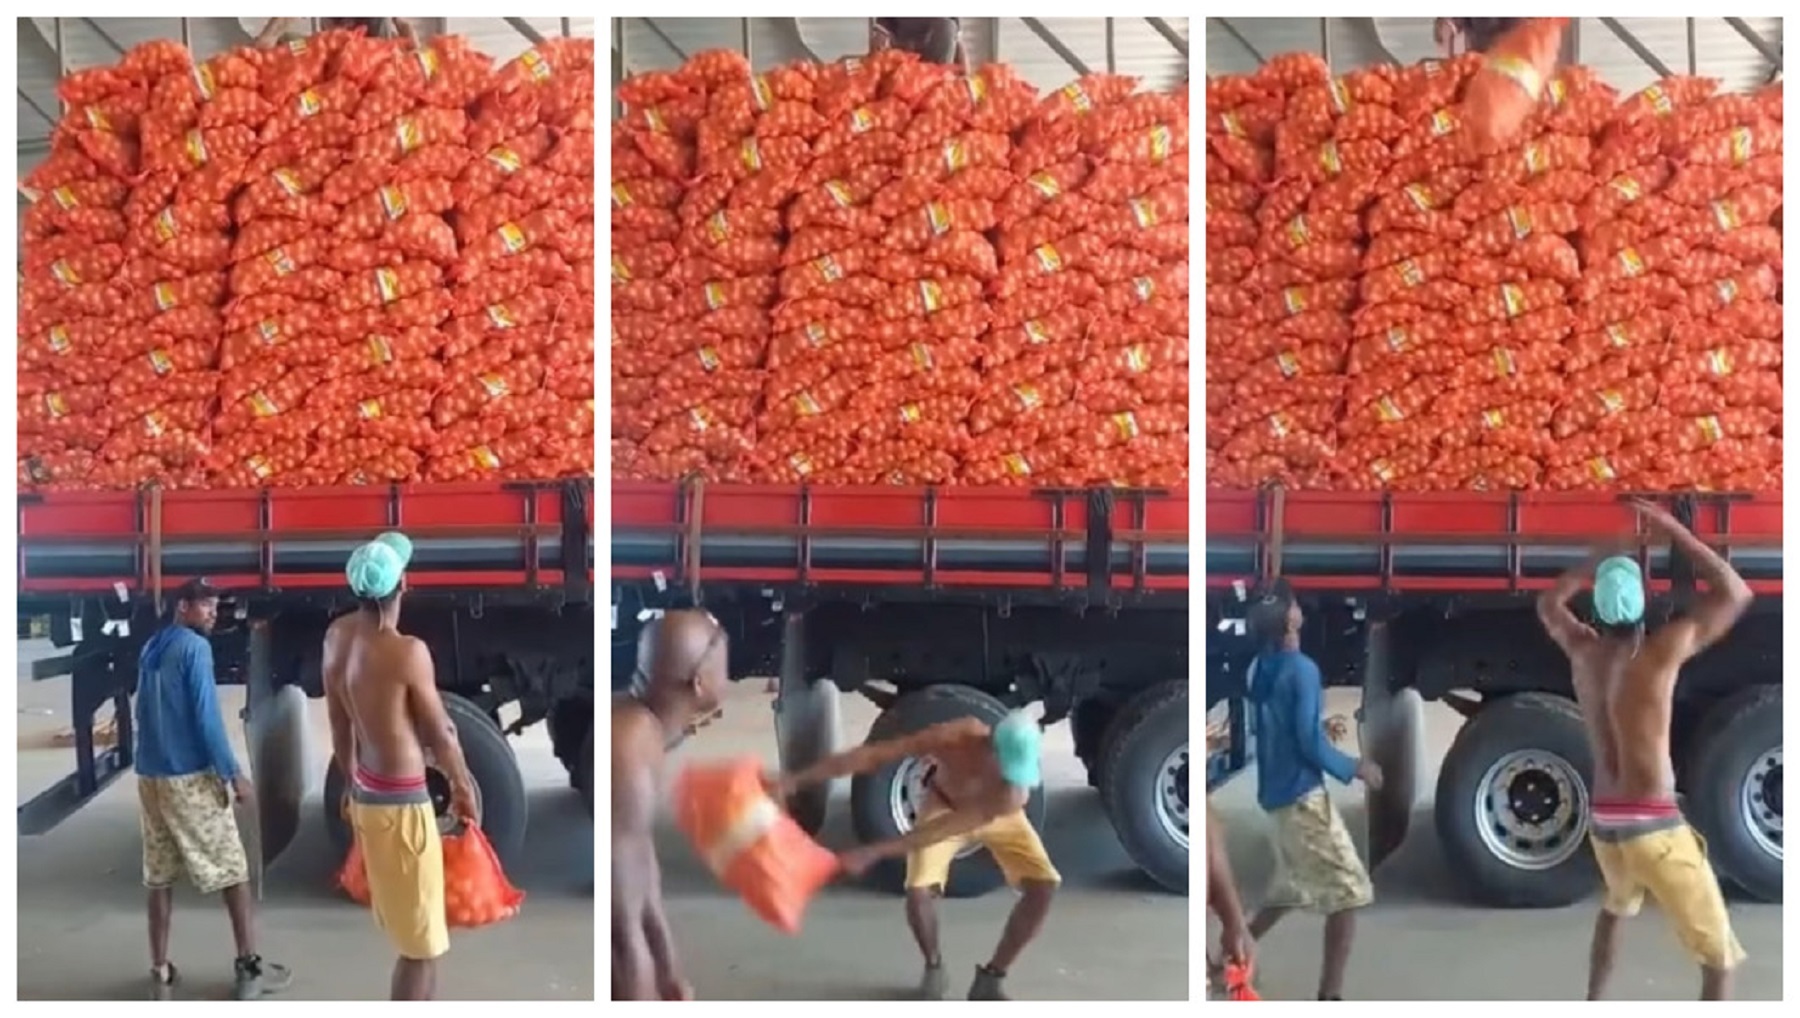 Veja como é carregado um caminhão carga alta com sacos de batatas